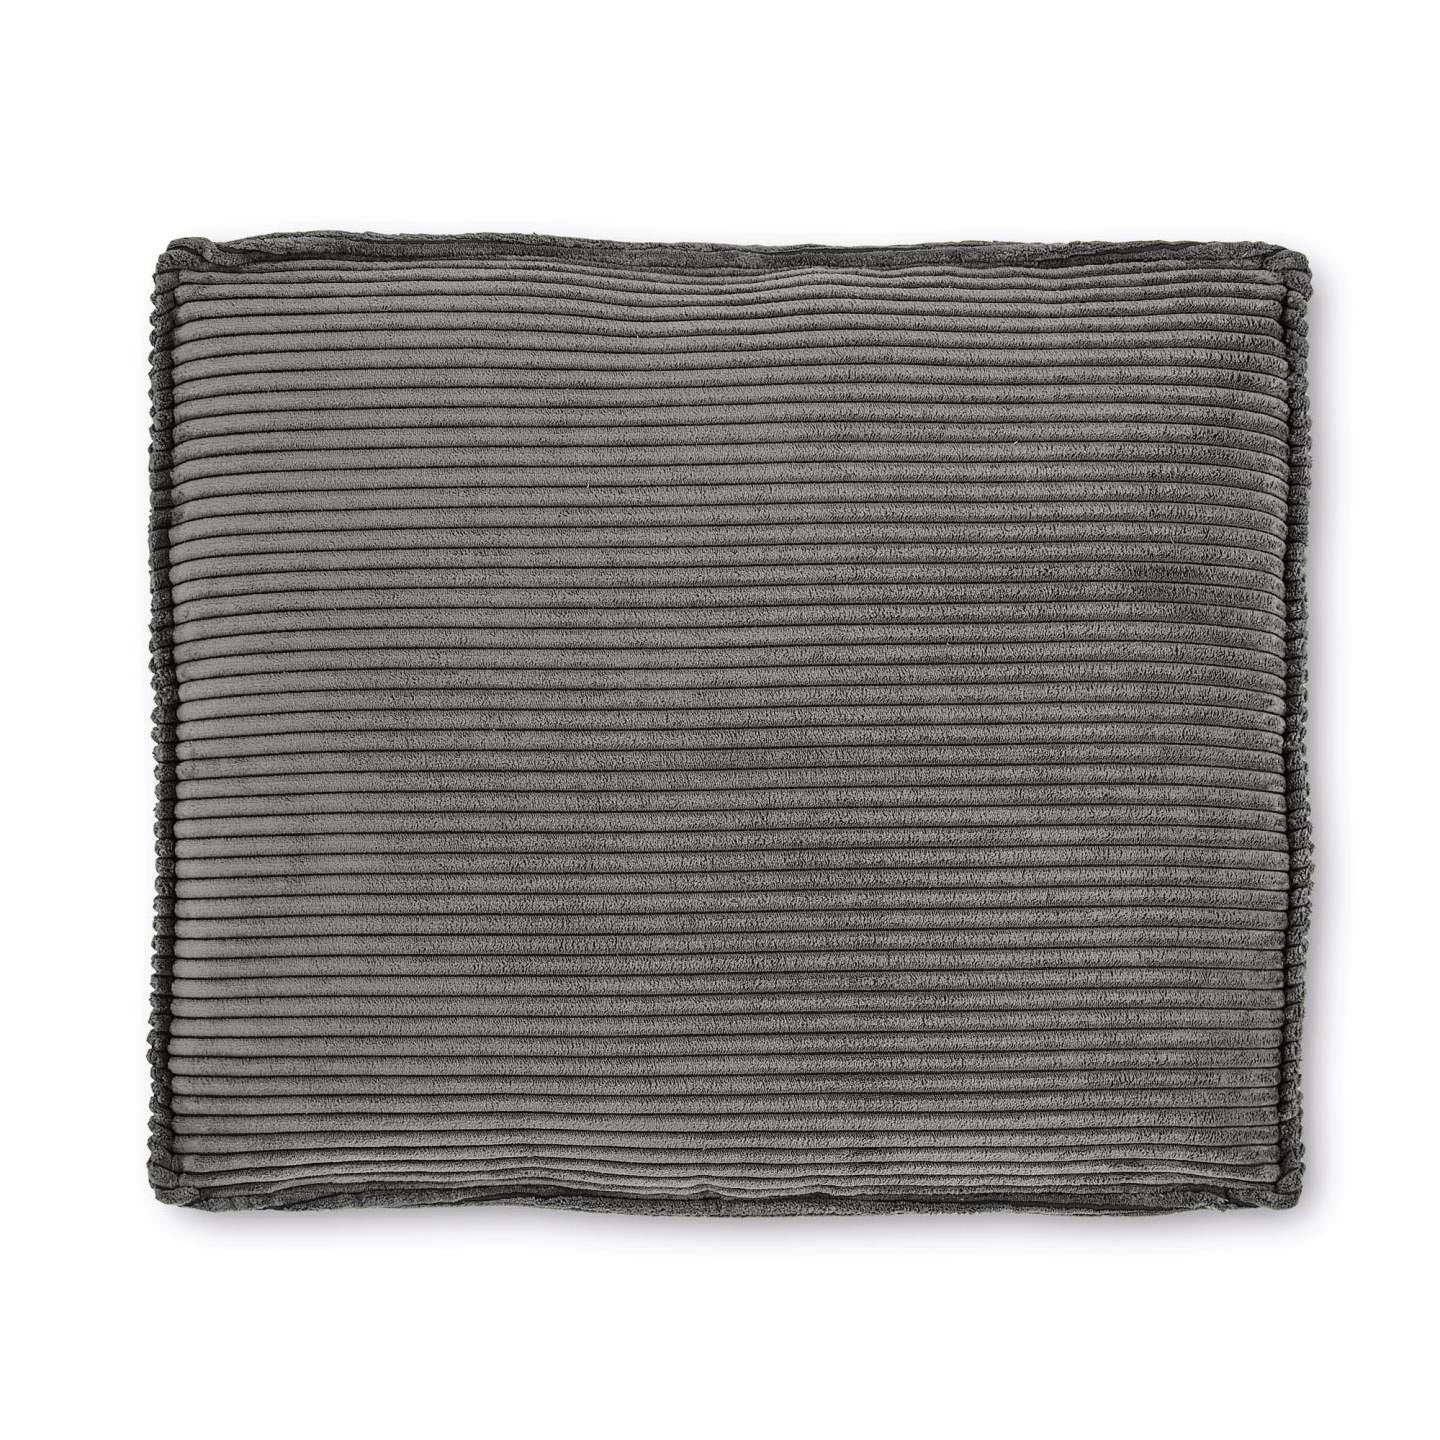 Blok cushion in grey wide seam corduroy, 50 x 60 cm